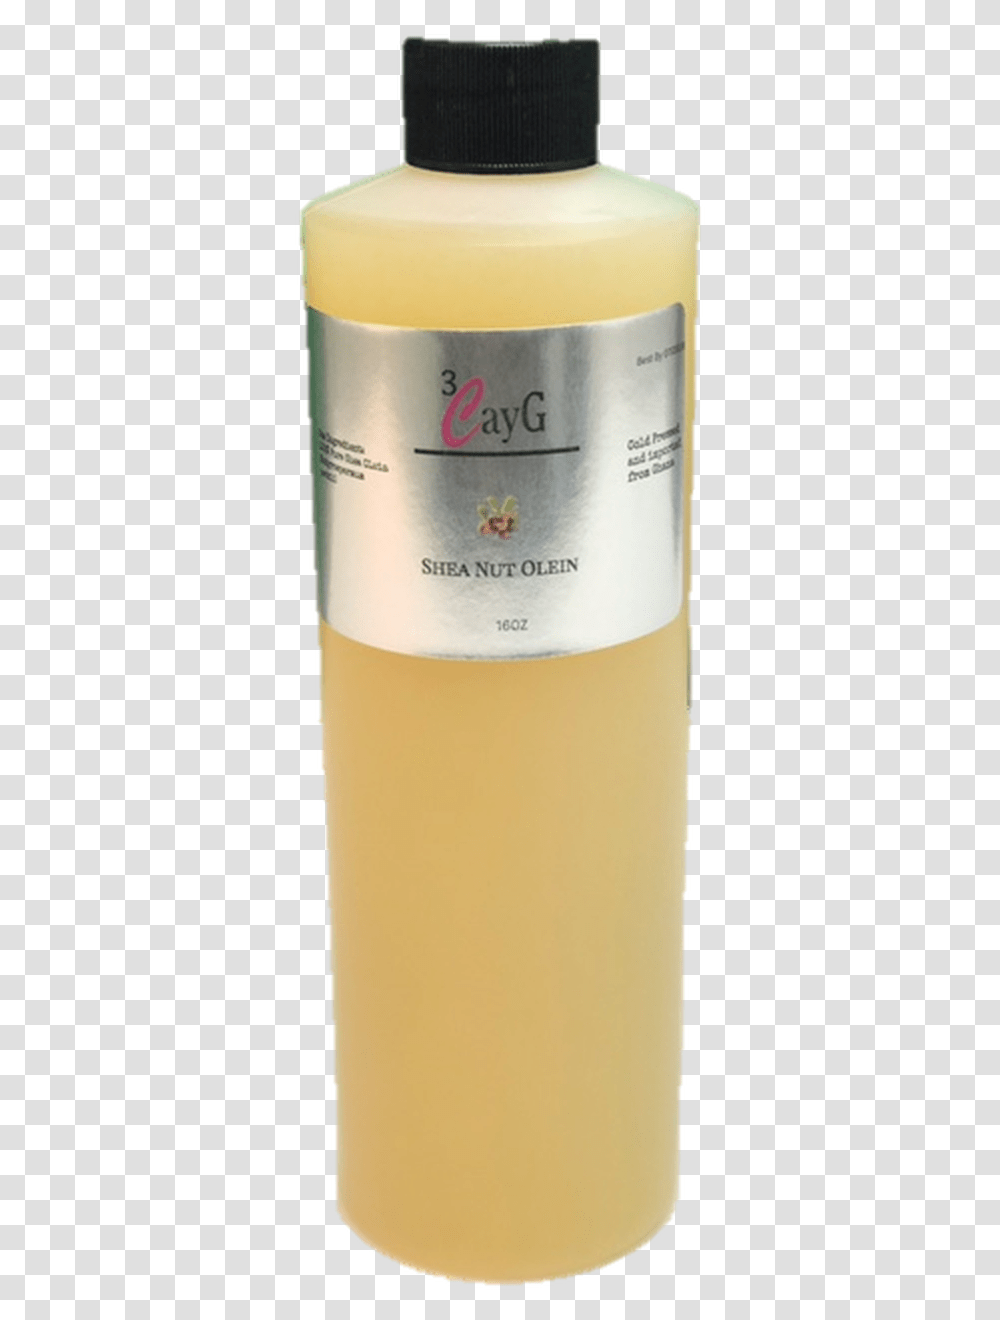 Gallon Shea Nut Oil, Alcohol, Beverage, Drink, Bottle Transparent Png